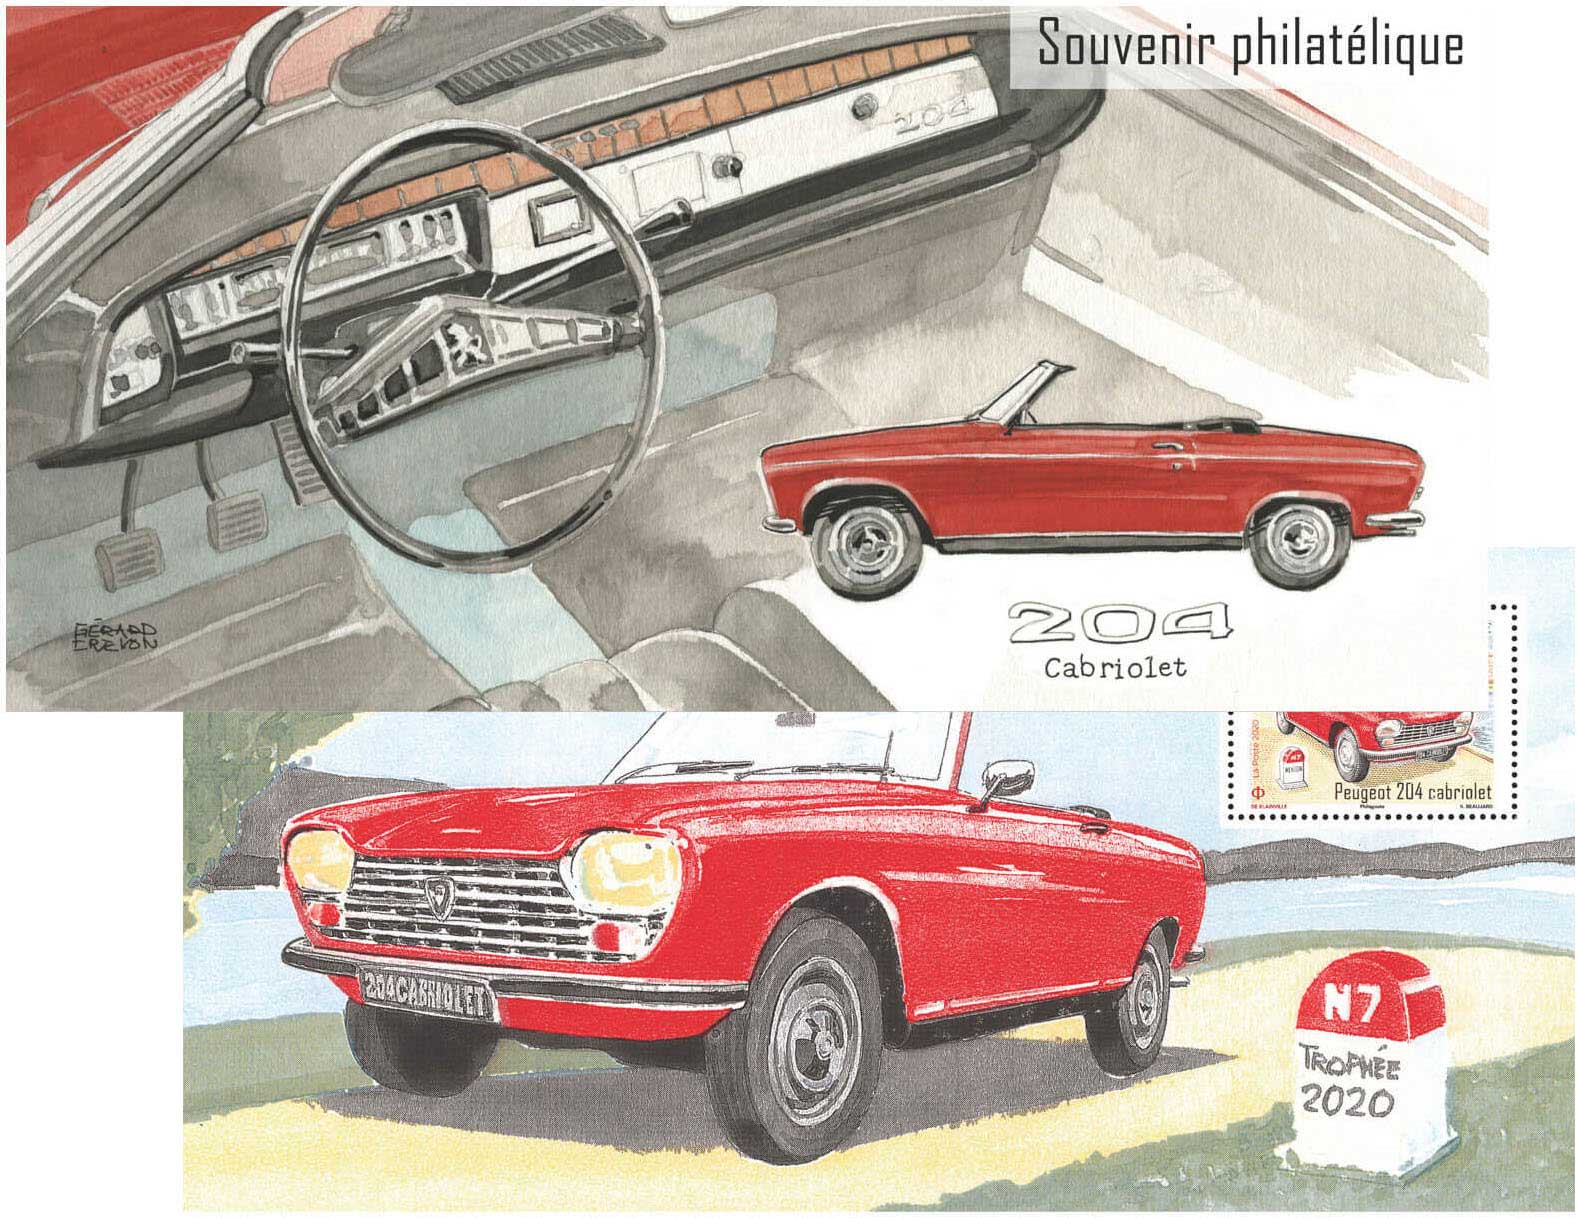 Souvenir philatélique - 204 Cabriolet